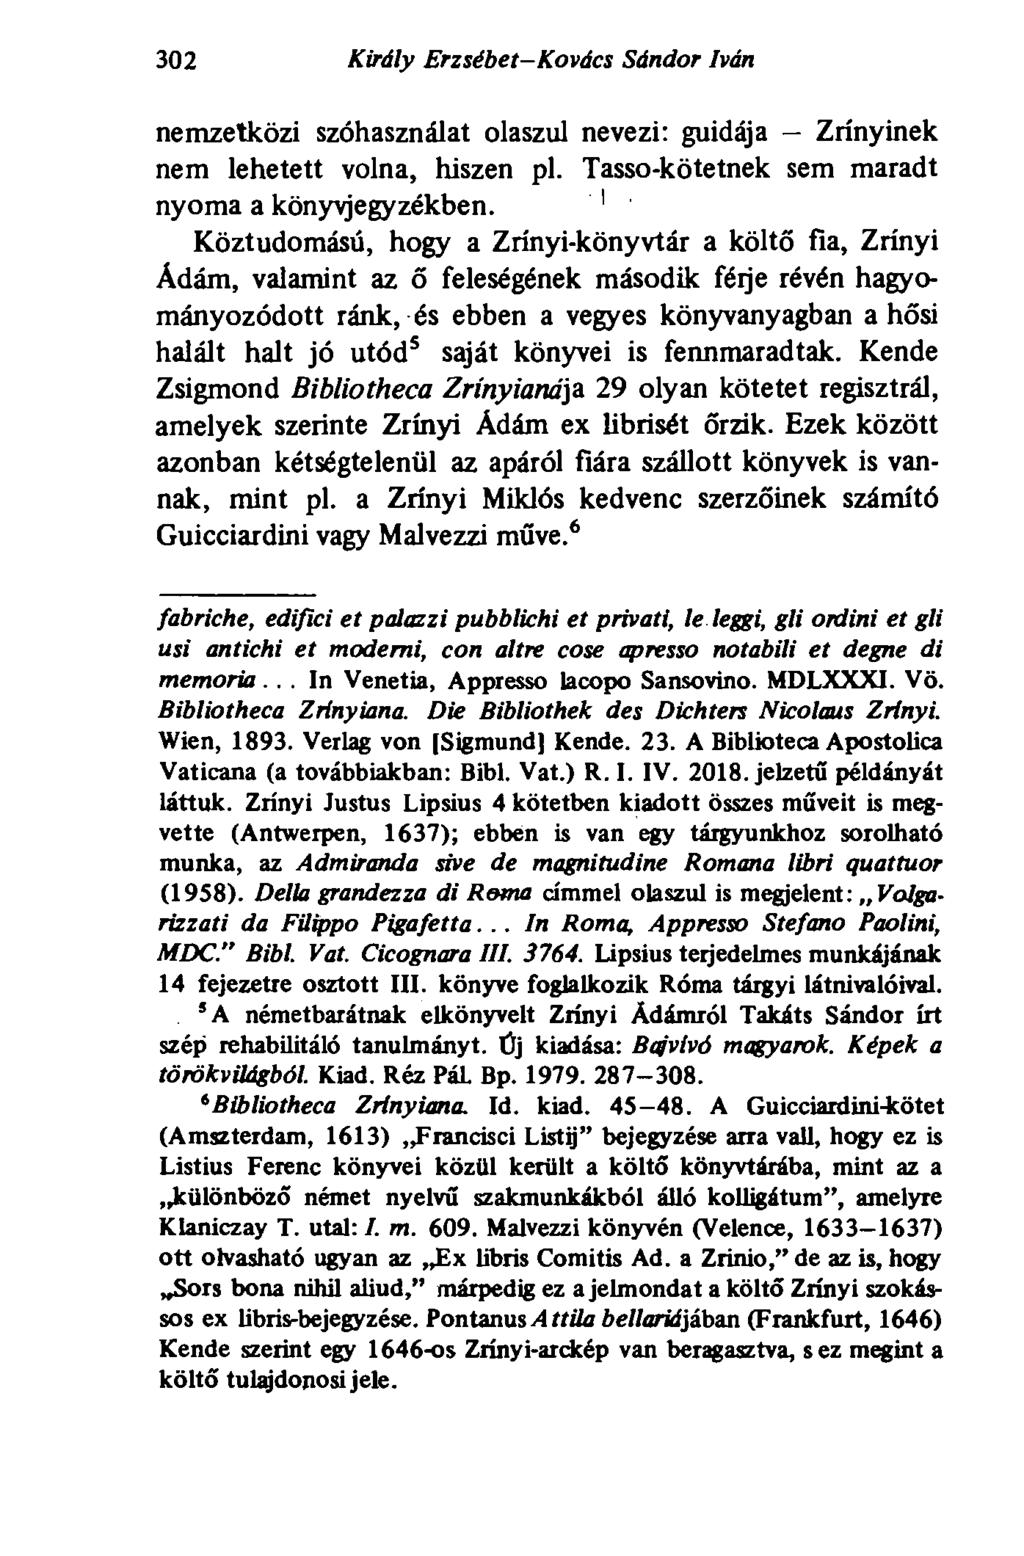 302 Király Erzsébet-Kovács Sándor Iván nemzetközi szóhasználat olaszul nevezi: guidája Zrínyinek nem lehetett volna, hiszen pl. Tasso-kötetnek sem maradt nyoma a könyvjegyzékben.